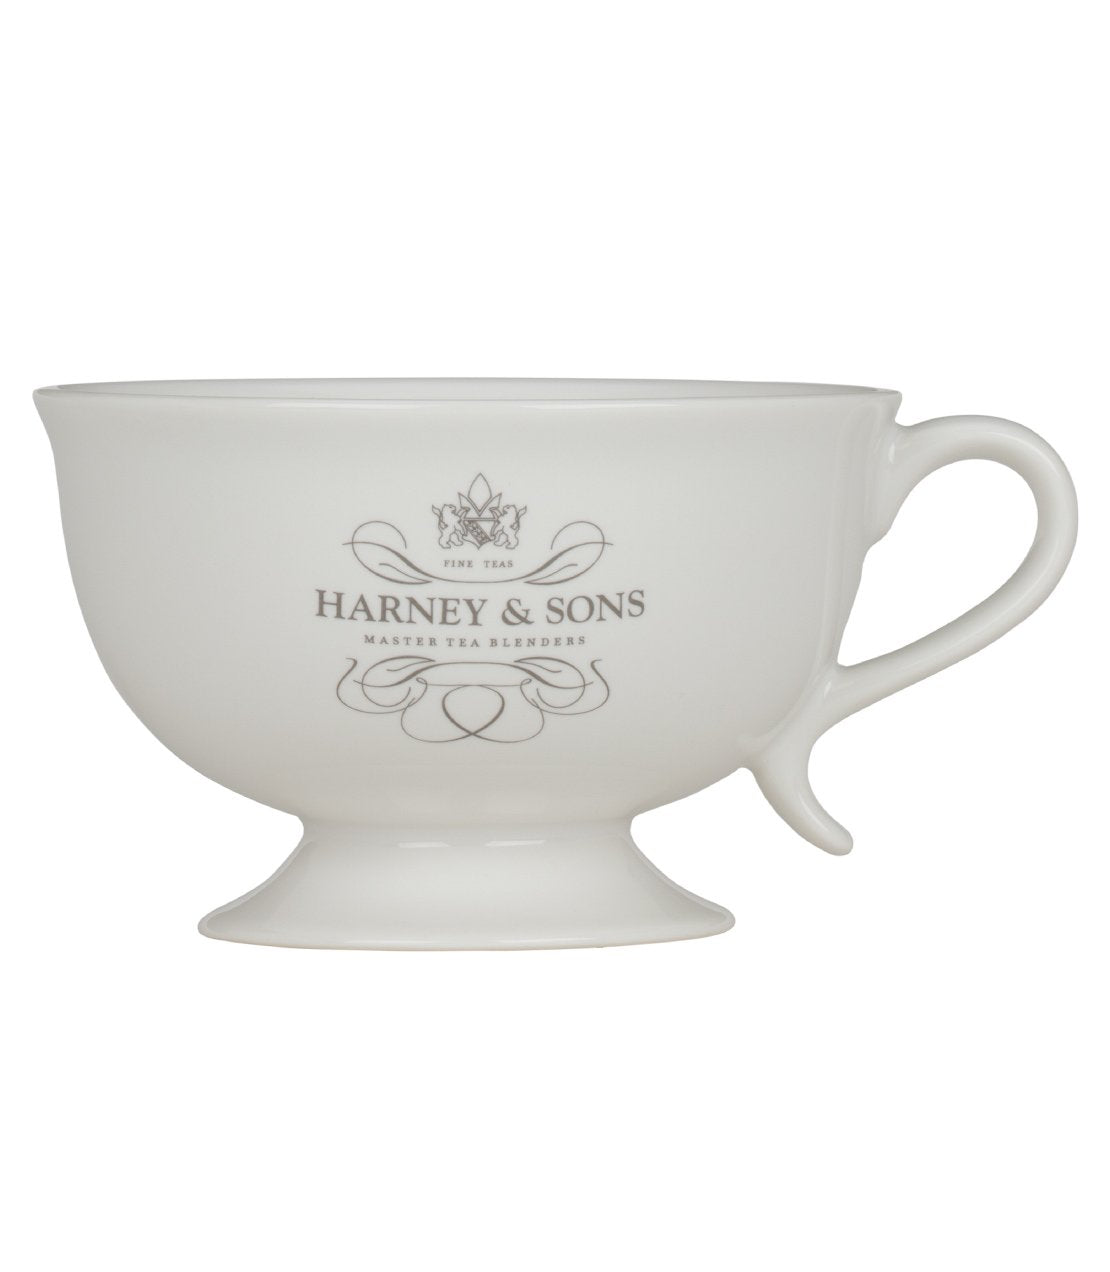 Harney & Sons Teacup -   - Harney & Sons Fine Teas